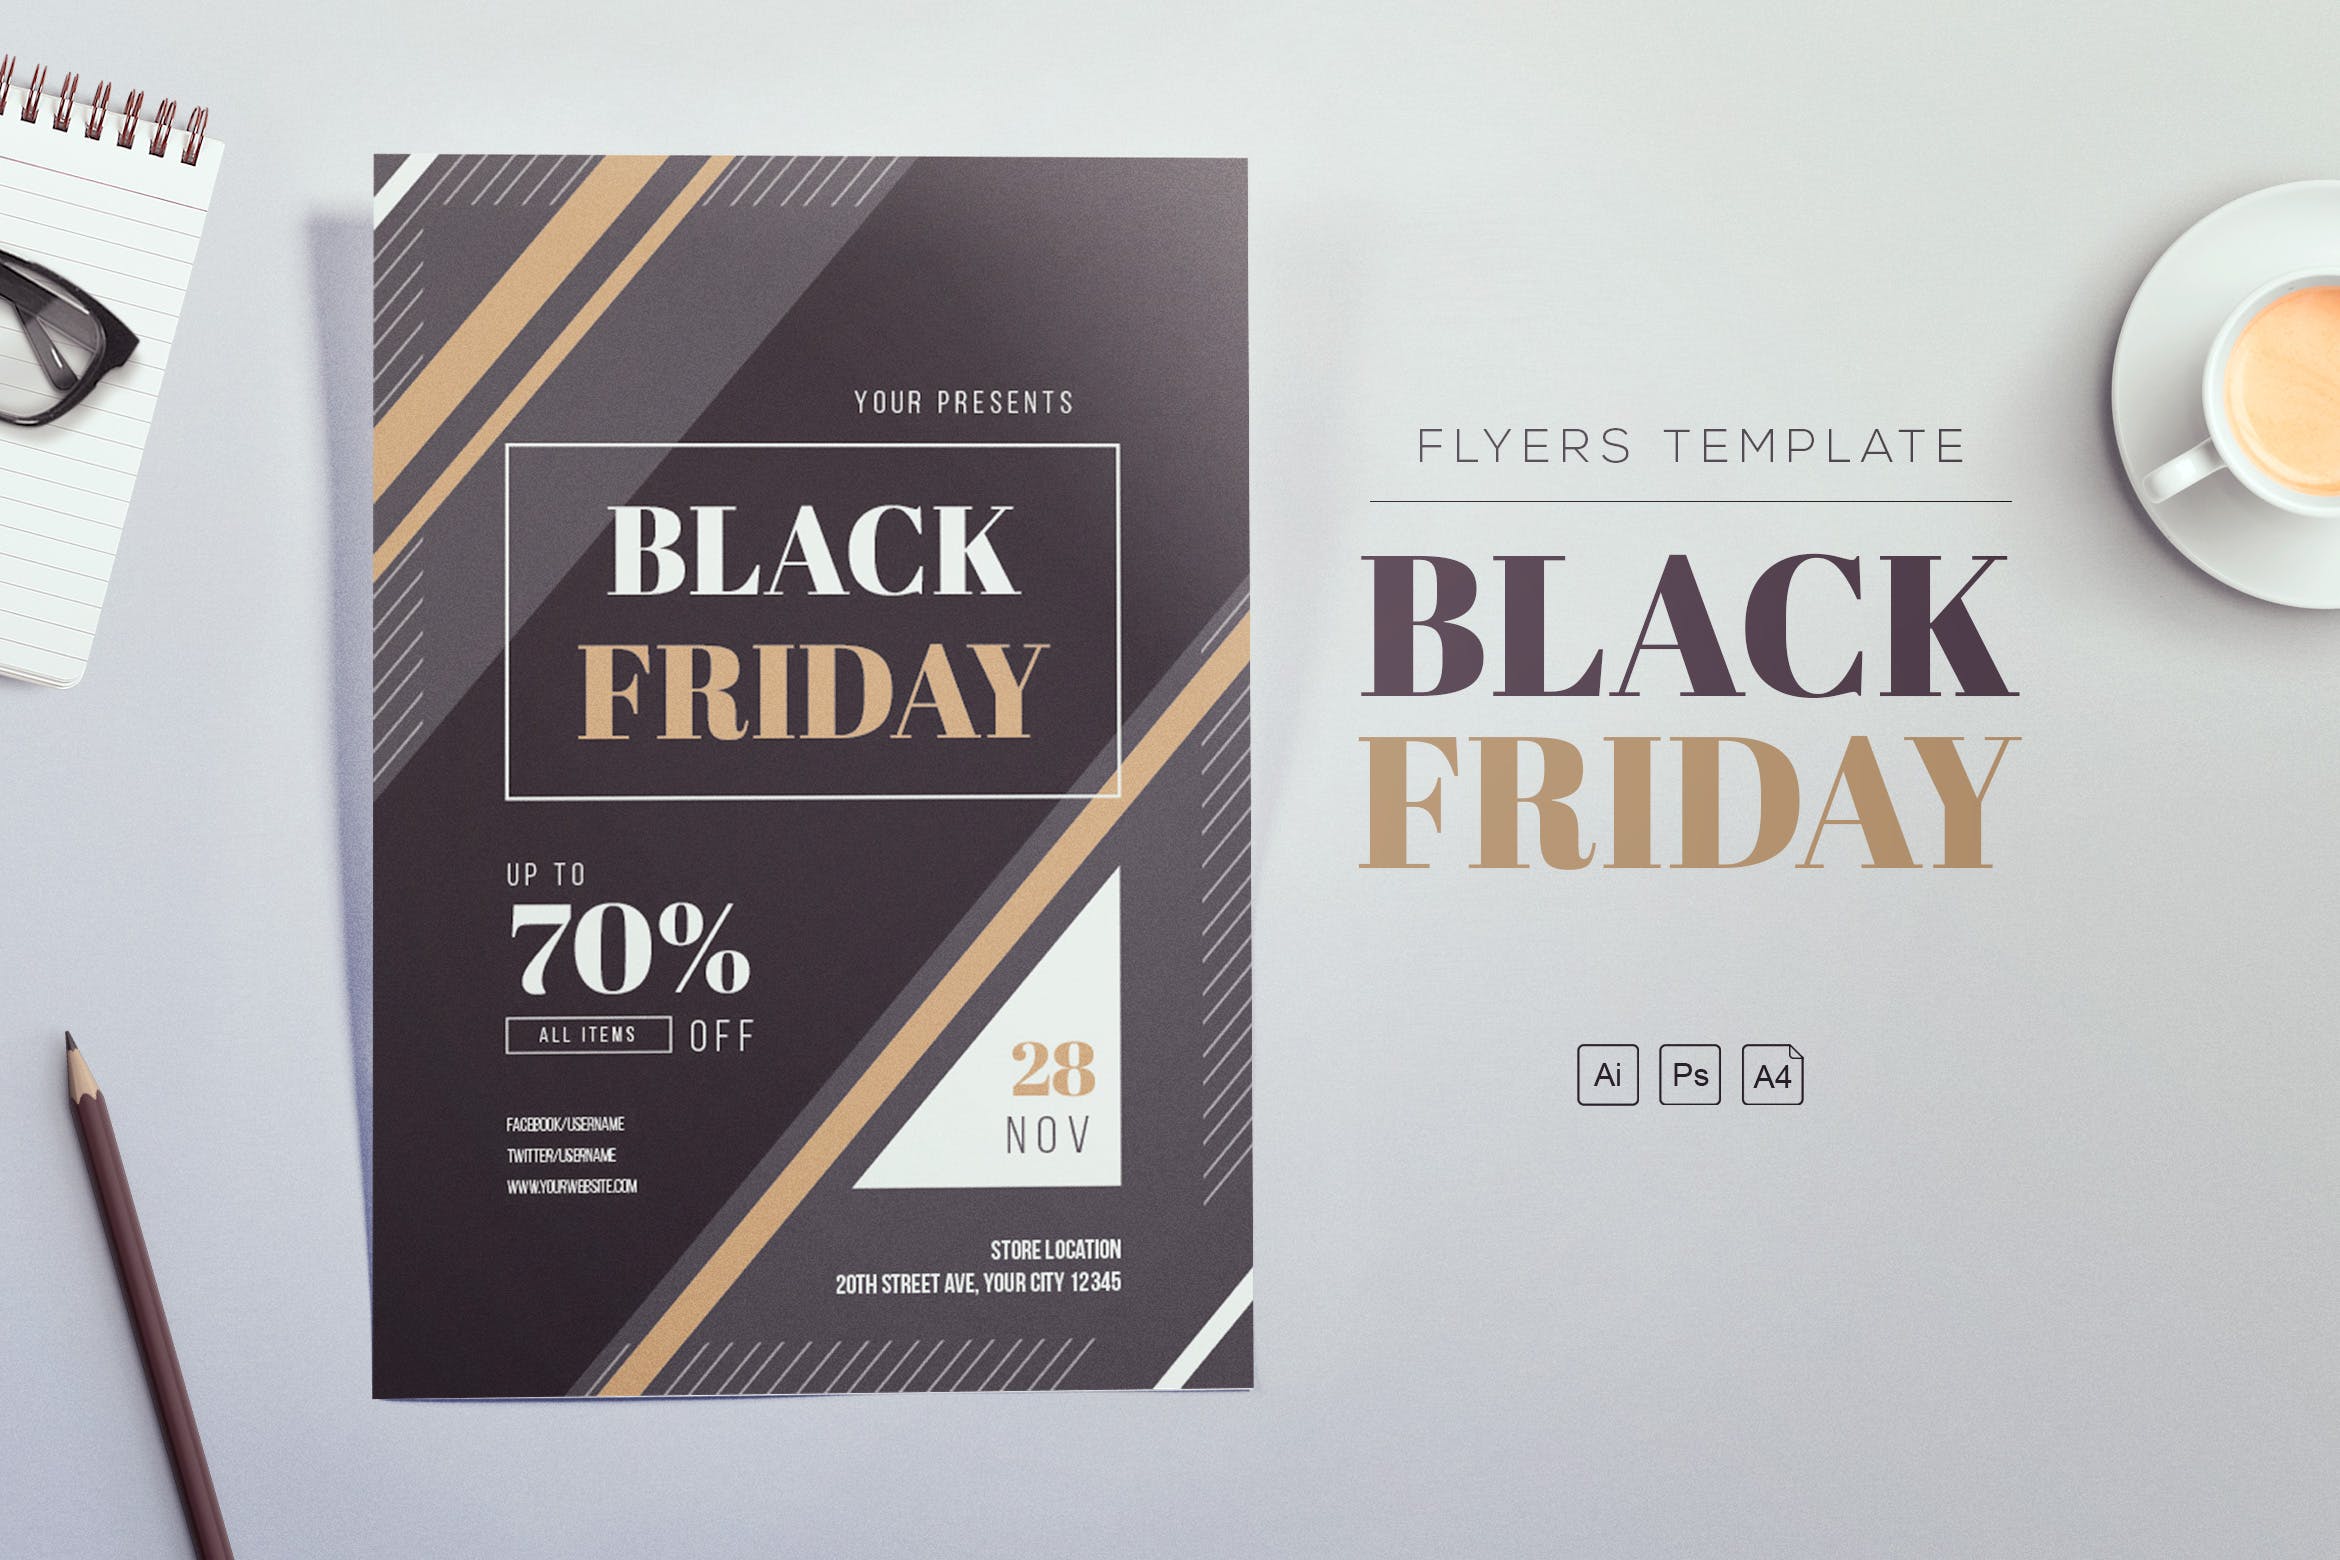 商务设计风格黒五打折活动海报传单设计模板 Black Friday 2018 Flyers插图